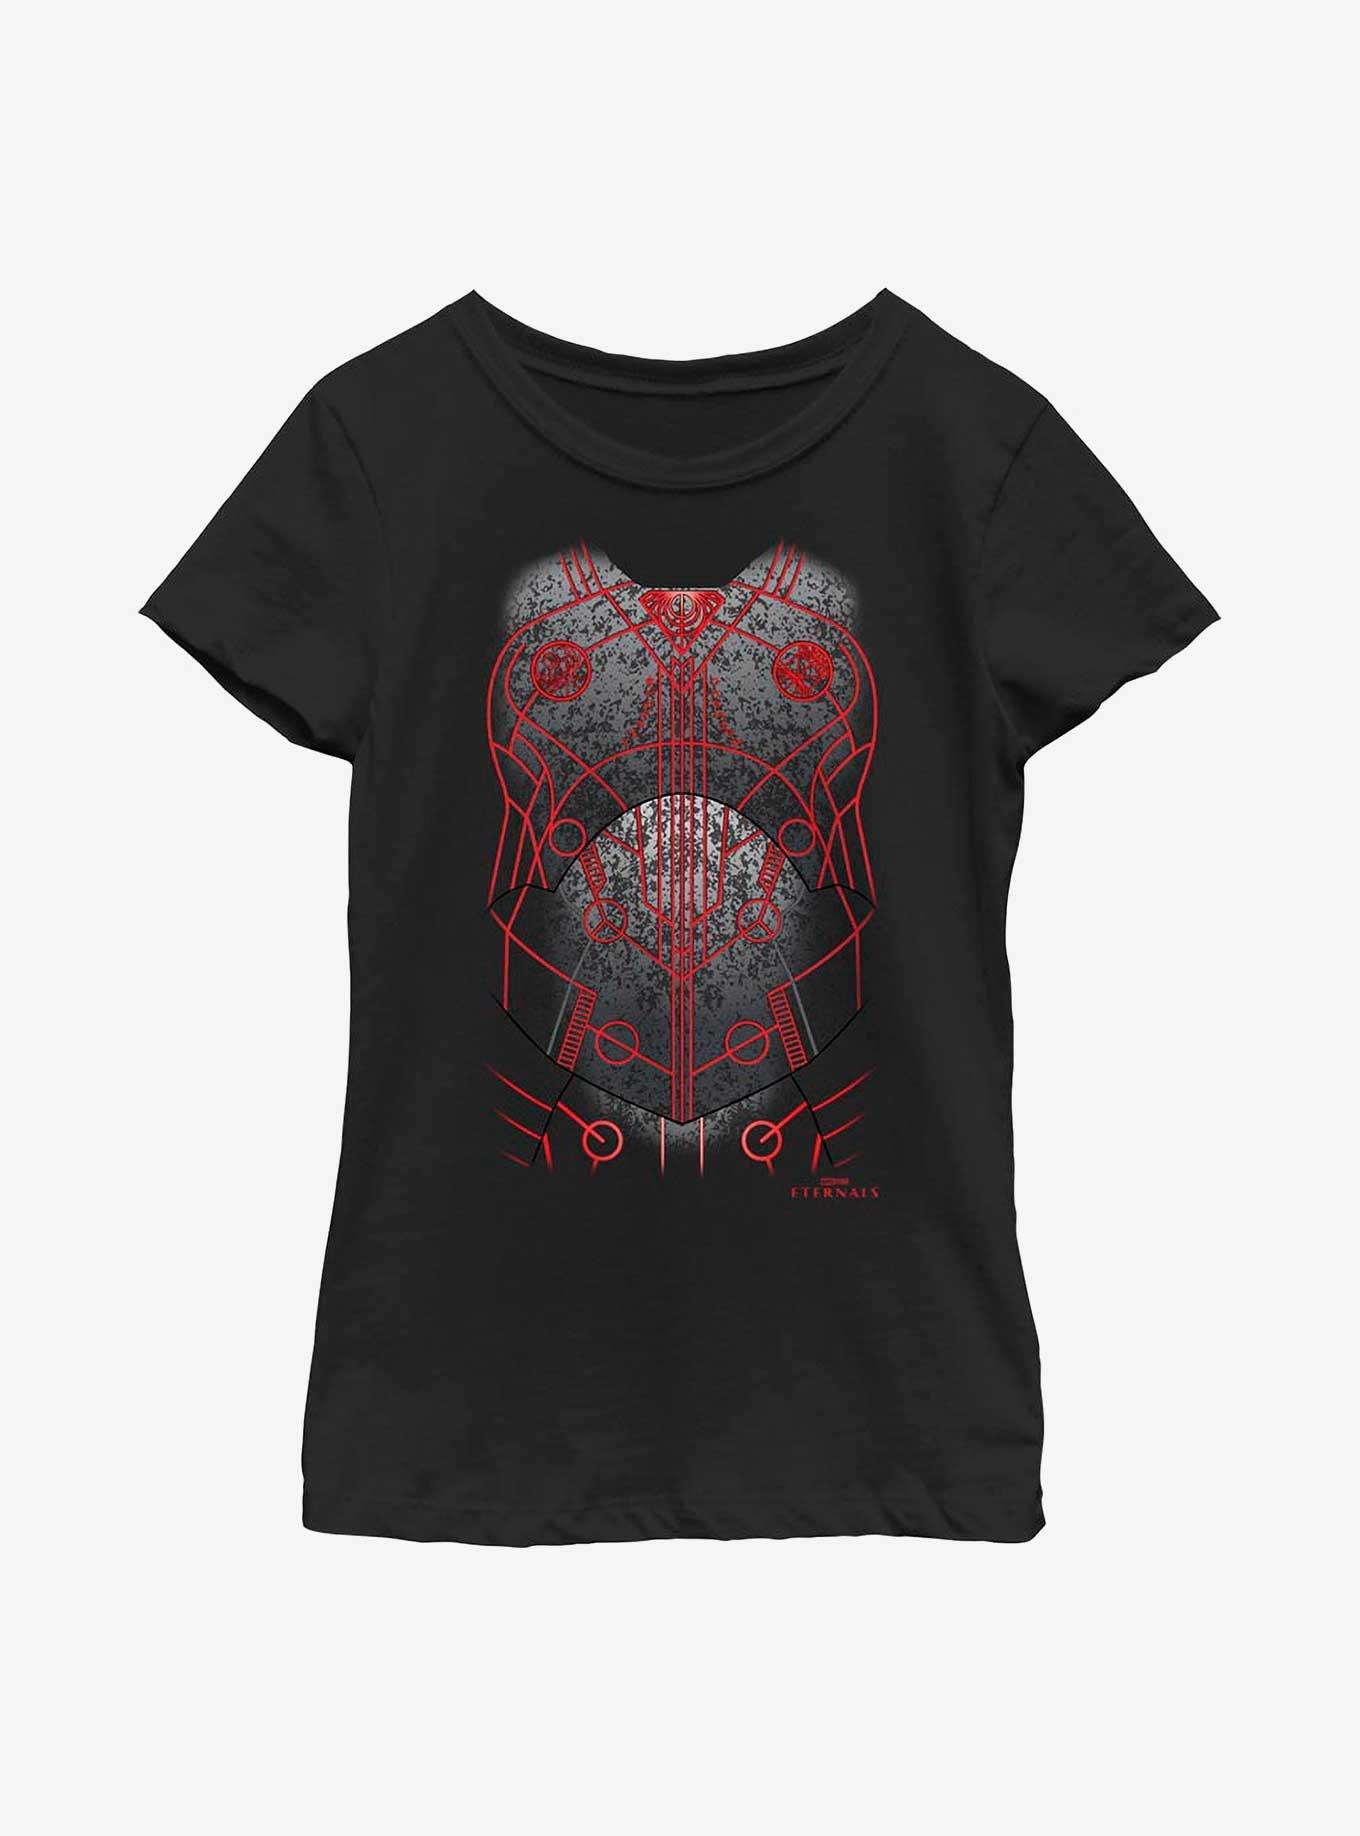 Marvel Eternals Druig Costume Youth Girls T-Shirt, BLACK, hi-res